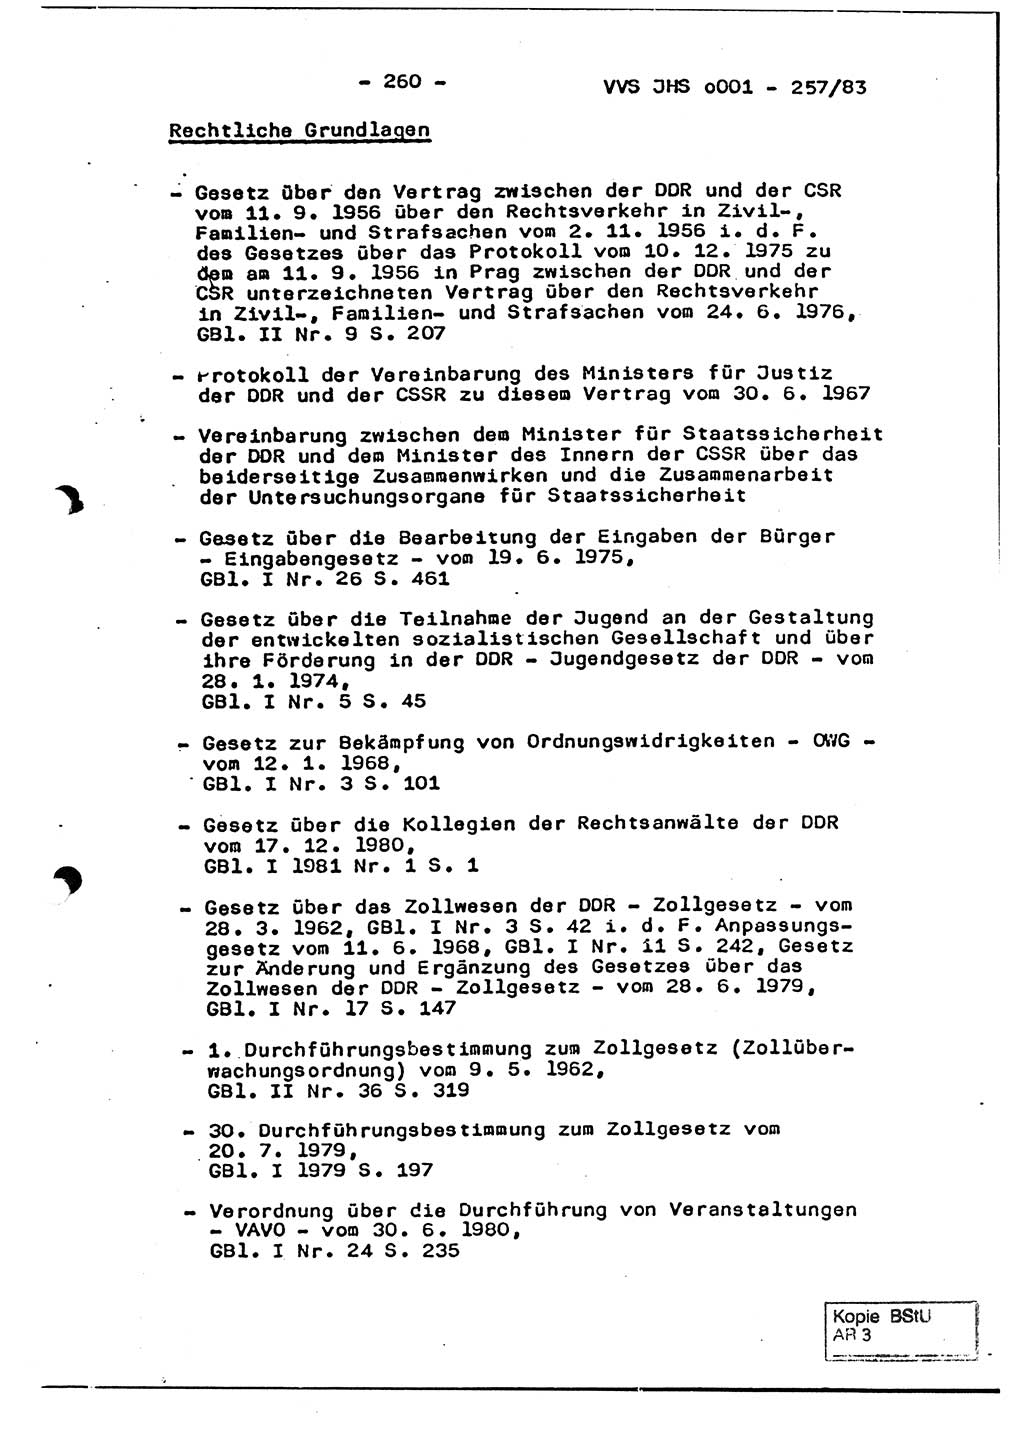 Dissertation, Oberst Helmut Lubas (BV Mdg.), Oberstleutnant Manfred Eschberger (HA IX), Oberleutnant Hans-Jürgen Ludwig (JHS), Ministerium für Staatssicherheit (MfS) [Deutsche Demokratische Republik (DDR)], Juristische Hochschule (JHS), Vertrauliche Verschlußsache (VVS) o001-257/83, Potsdam 1983, Seite 260 (Diss. MfS DDR JHS VVS o001-257/83 1983, S. 260)